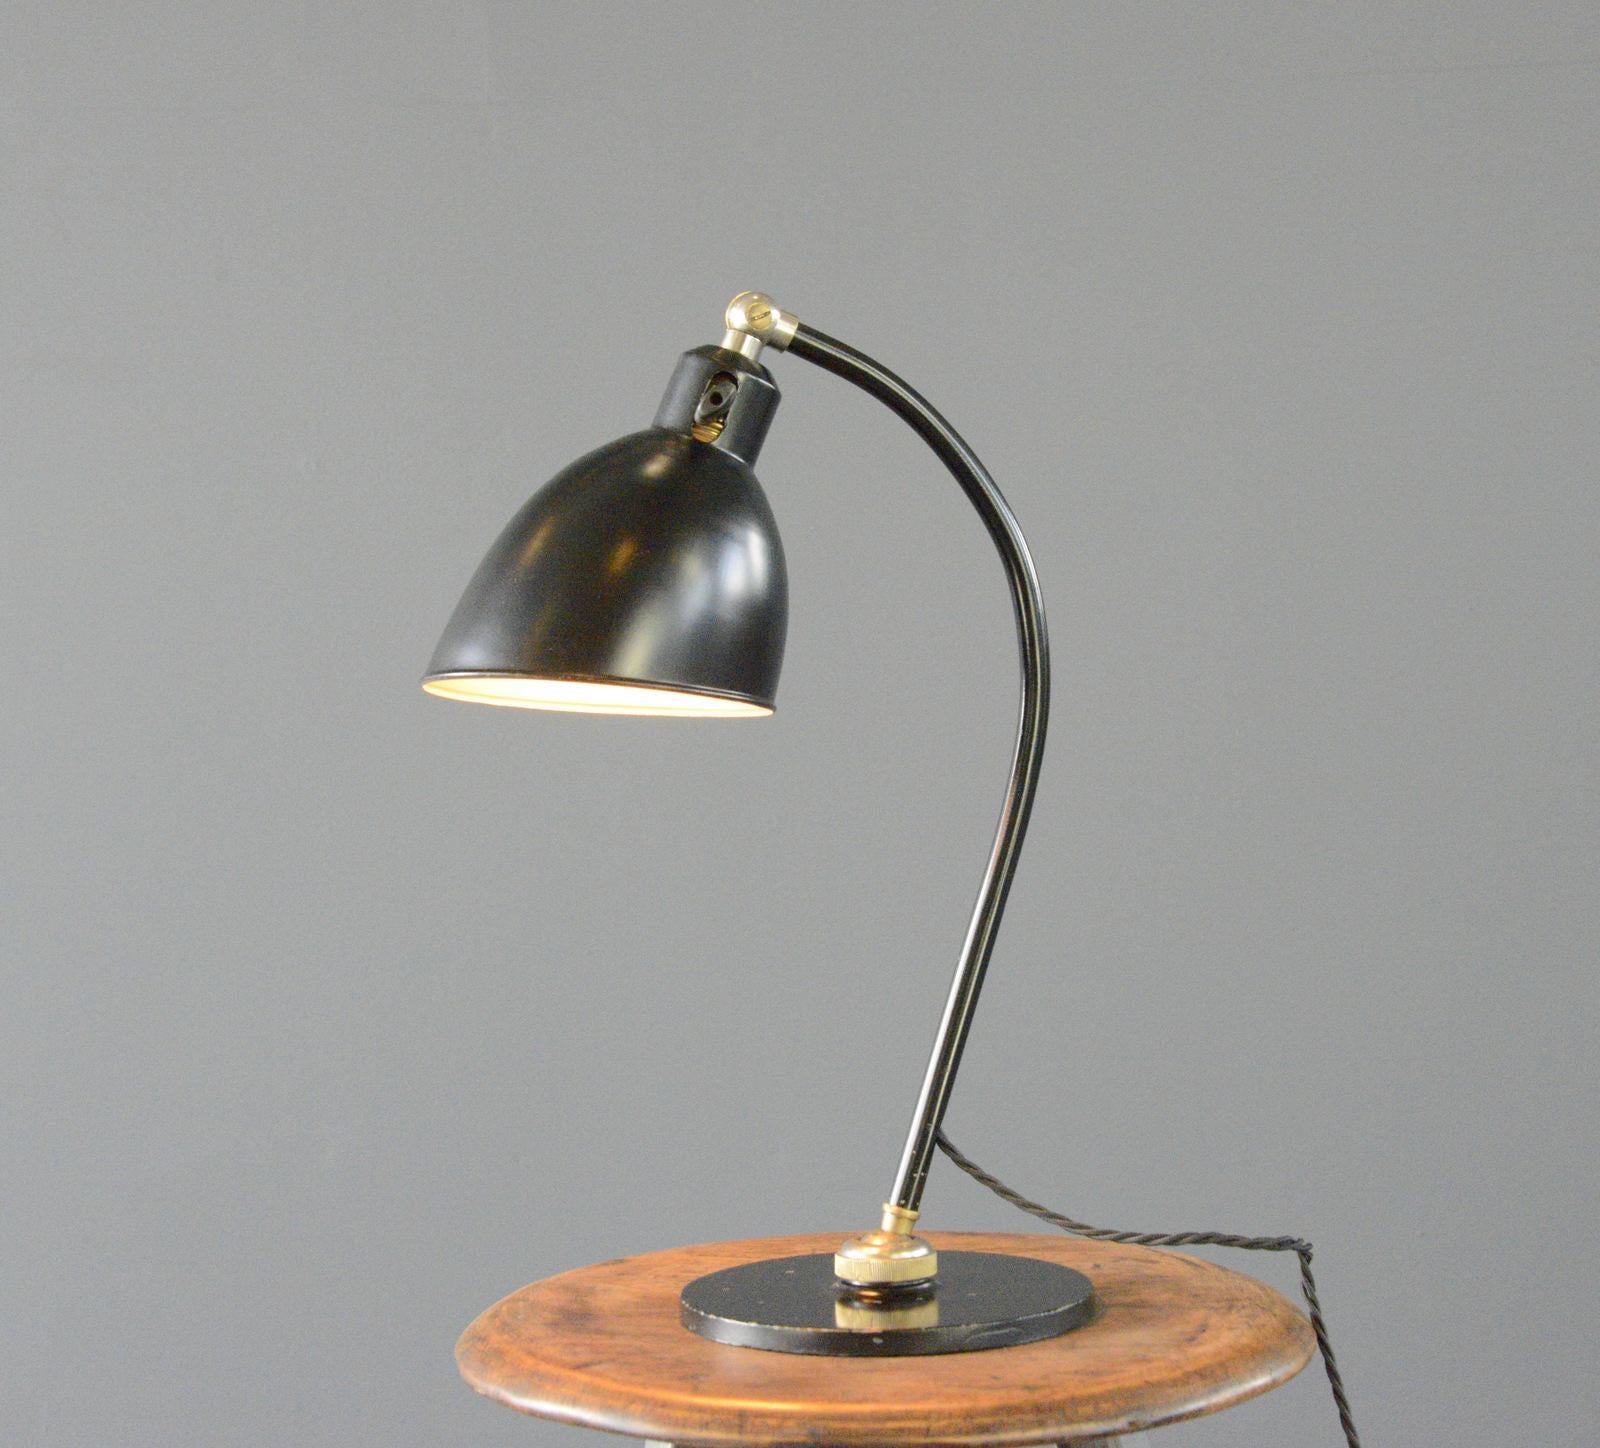 Bauhaus Polo Popular Desk Lamp By Christian Dell For BUR